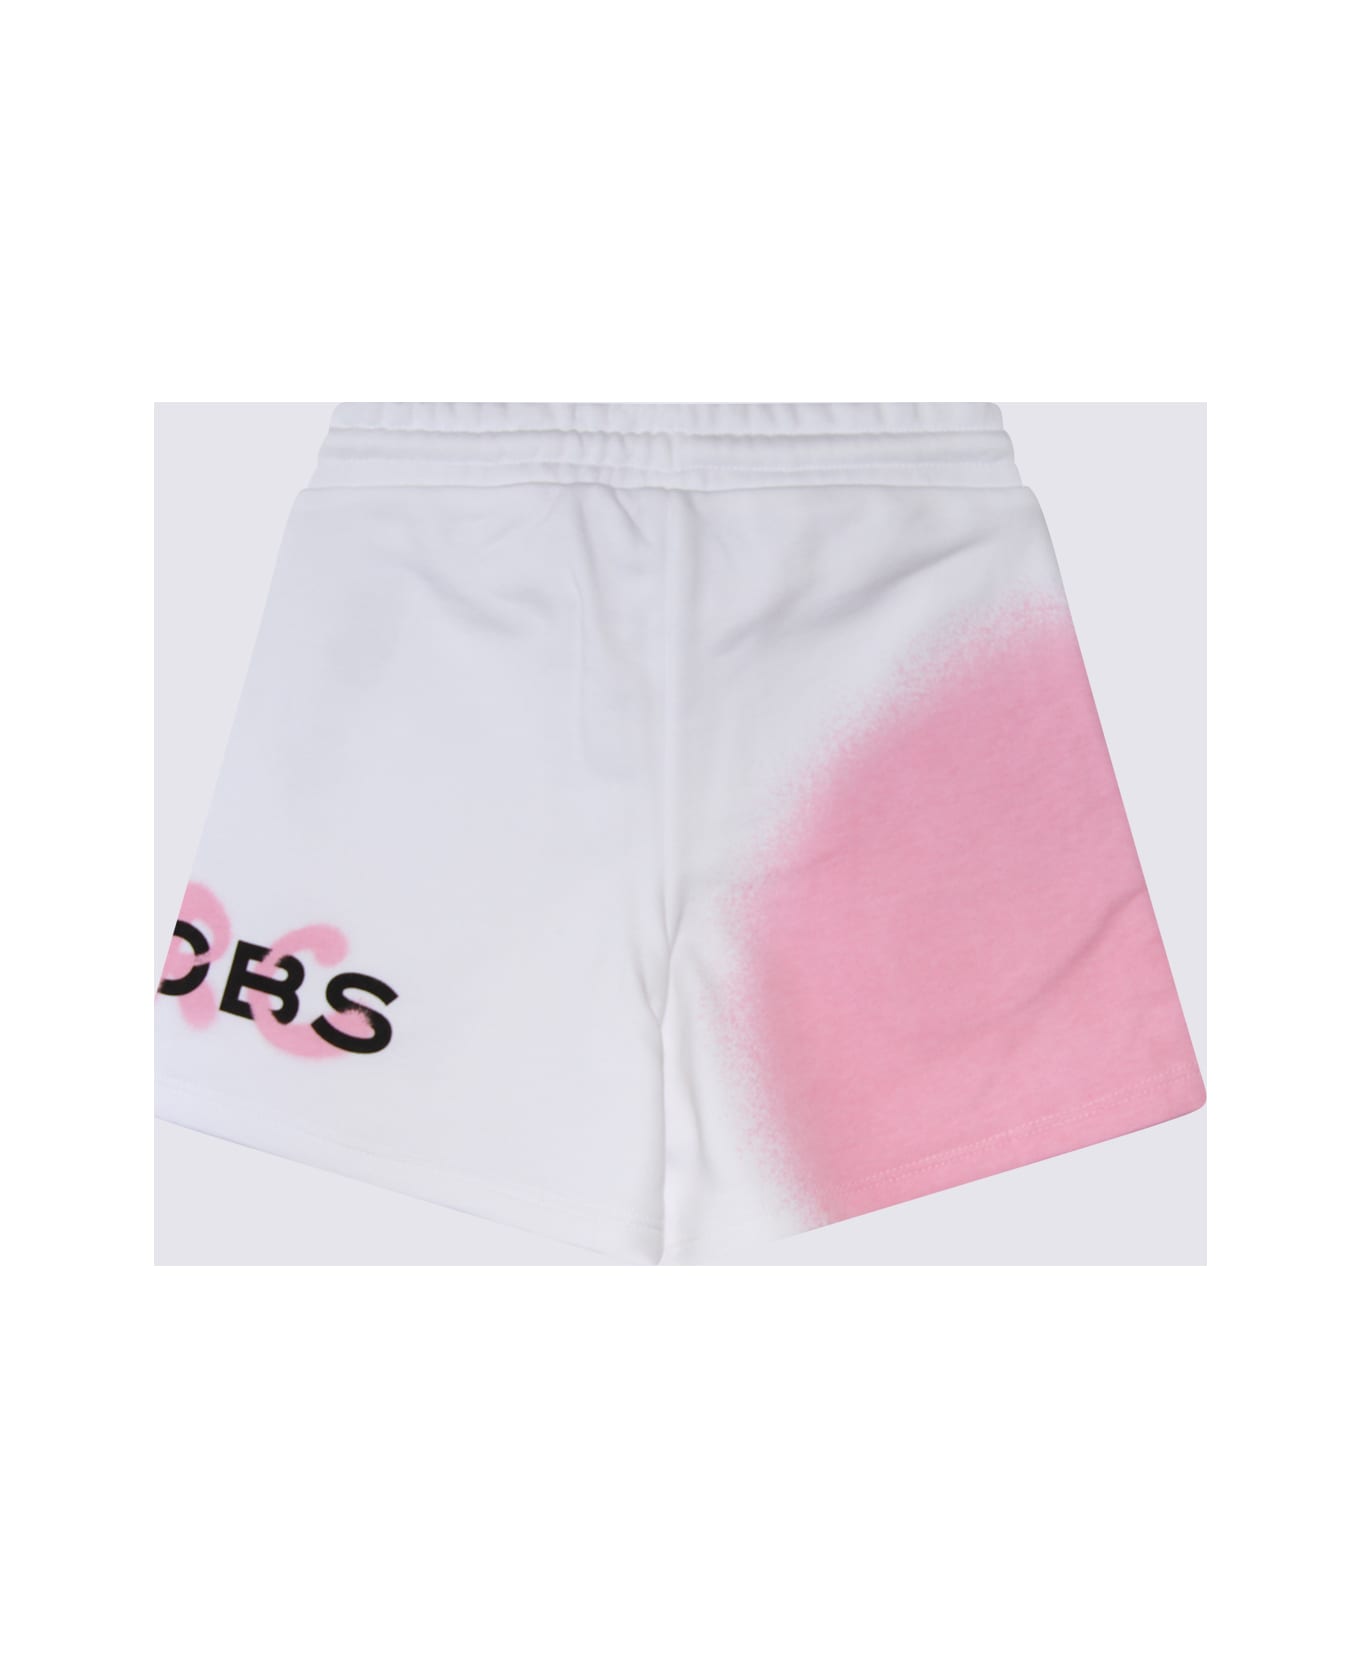 Marc Jacobs White Cotton Shorts - White ボトムス